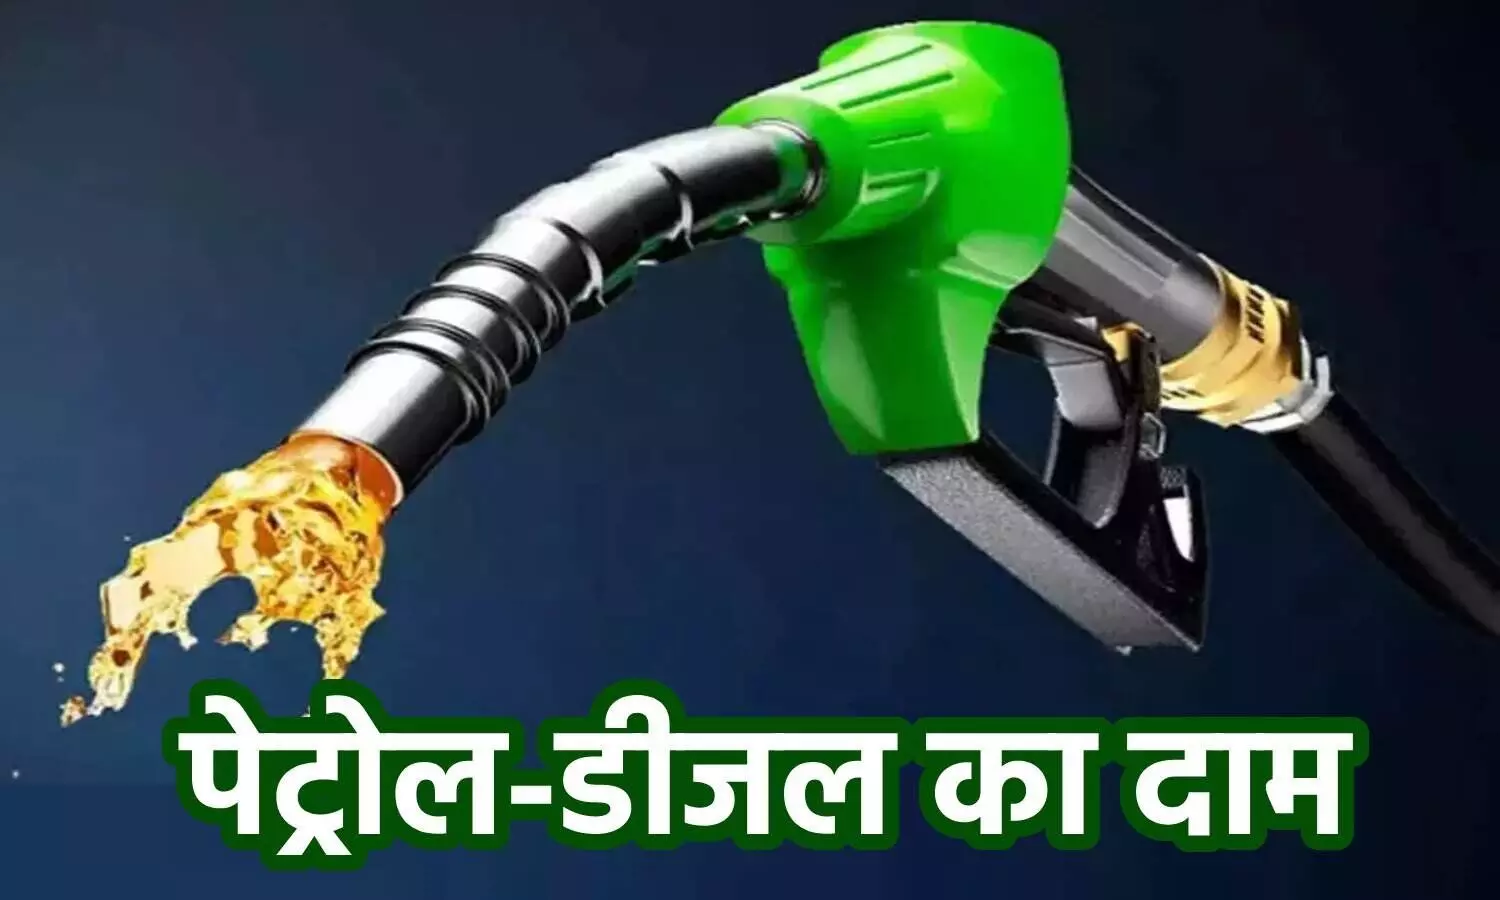 UP Petrol Diesel Price Today: यूपी में पेट्रोल डीजल के ताजा कीमतें जारी, लखनऊ कानपुर में आई गिरावट, जानें अपने शहर का रेट